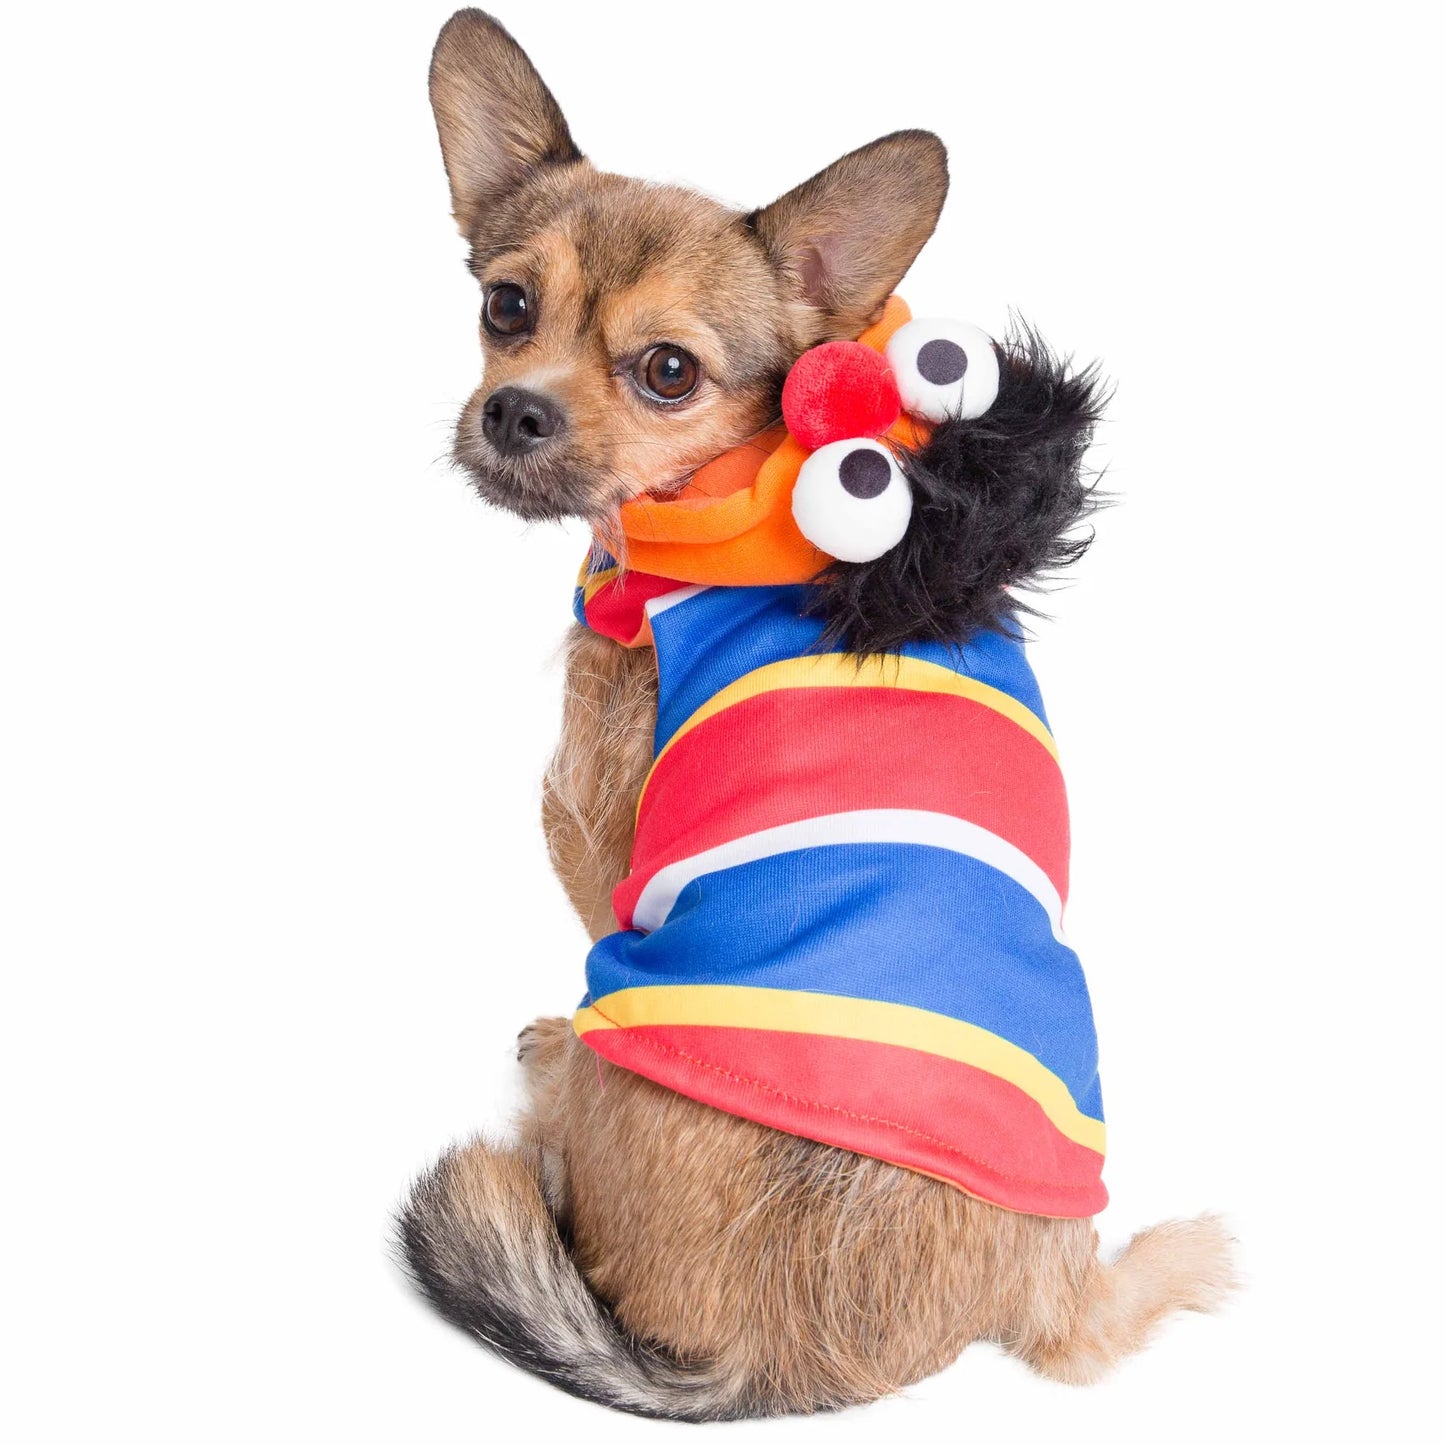 Astro Dog Clothes 